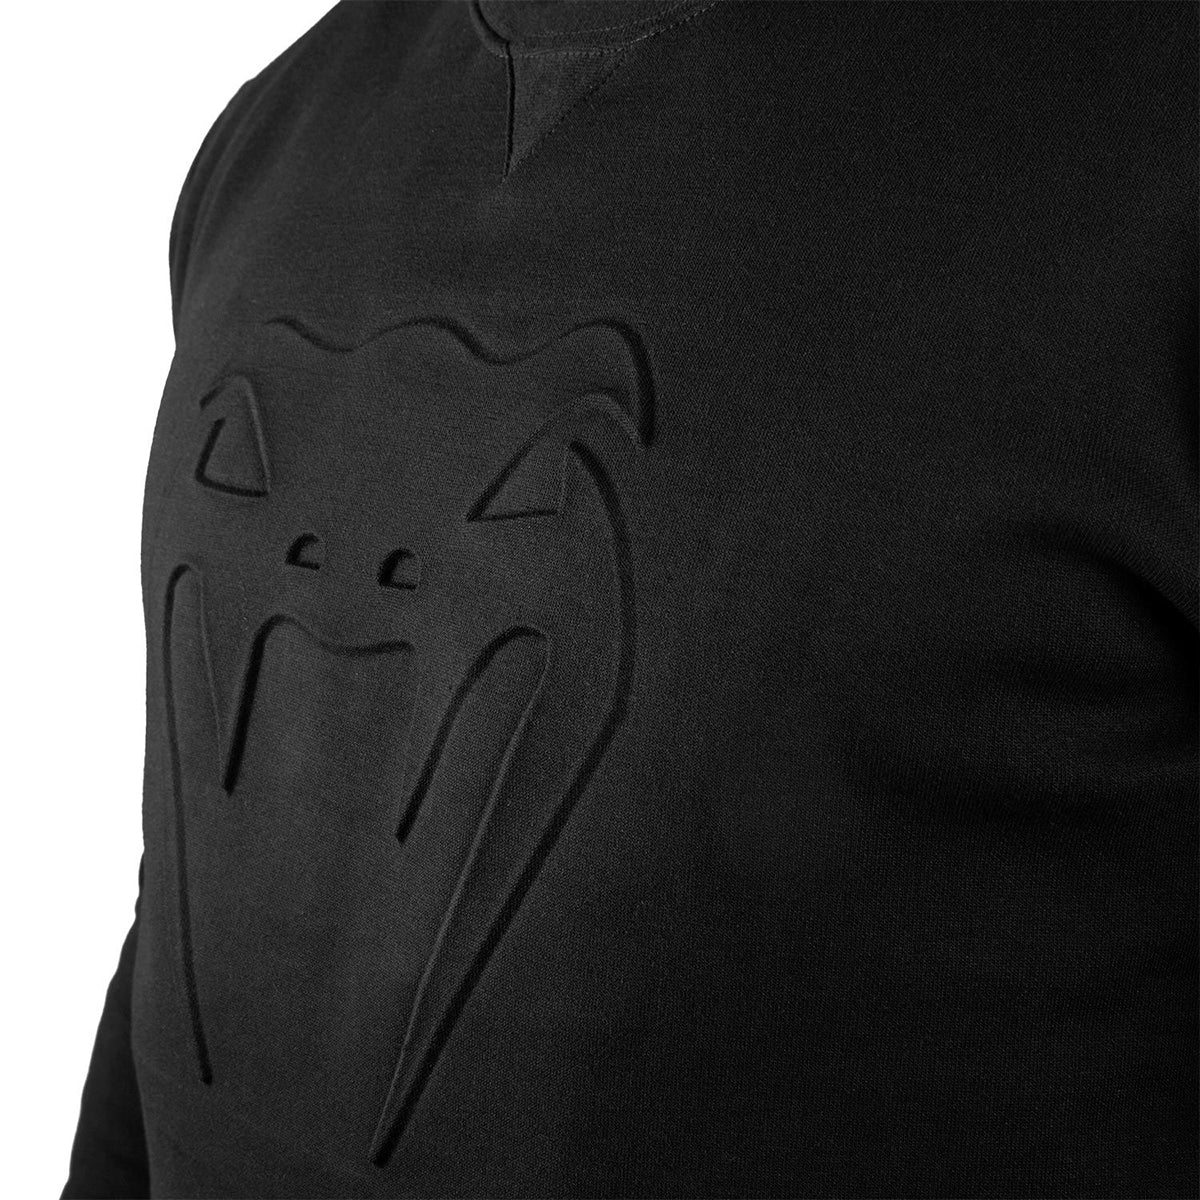 Venum Classic Pullover Sweatshirt - Black/Black Venum